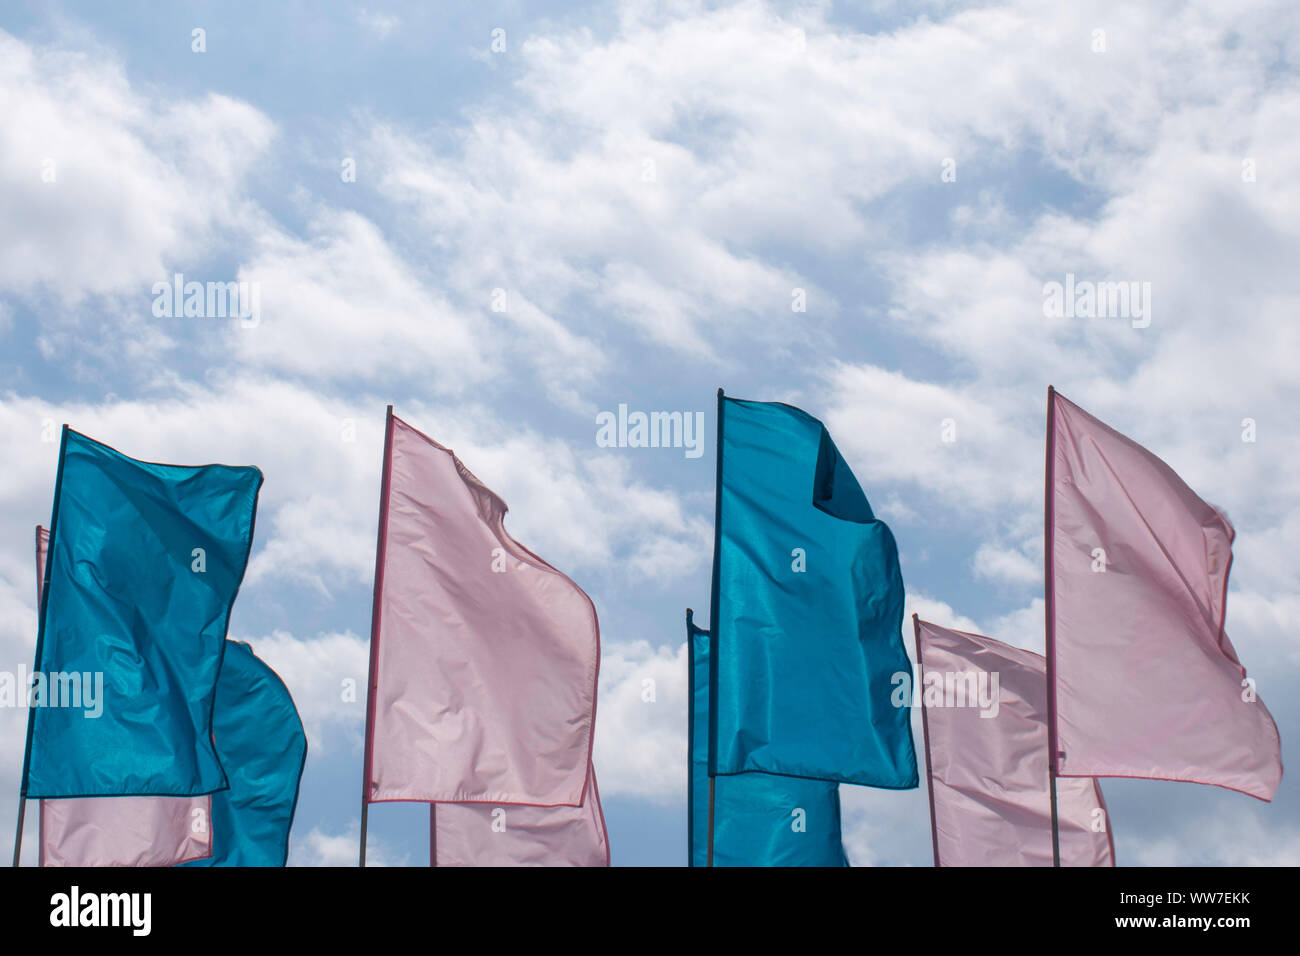 Rosa und Blaue Fahnen in den Wind gegen einen blauen bewölkten Himmel schlägt das Konzept des männlichen, weiblichen und cisgender. Stockfoto